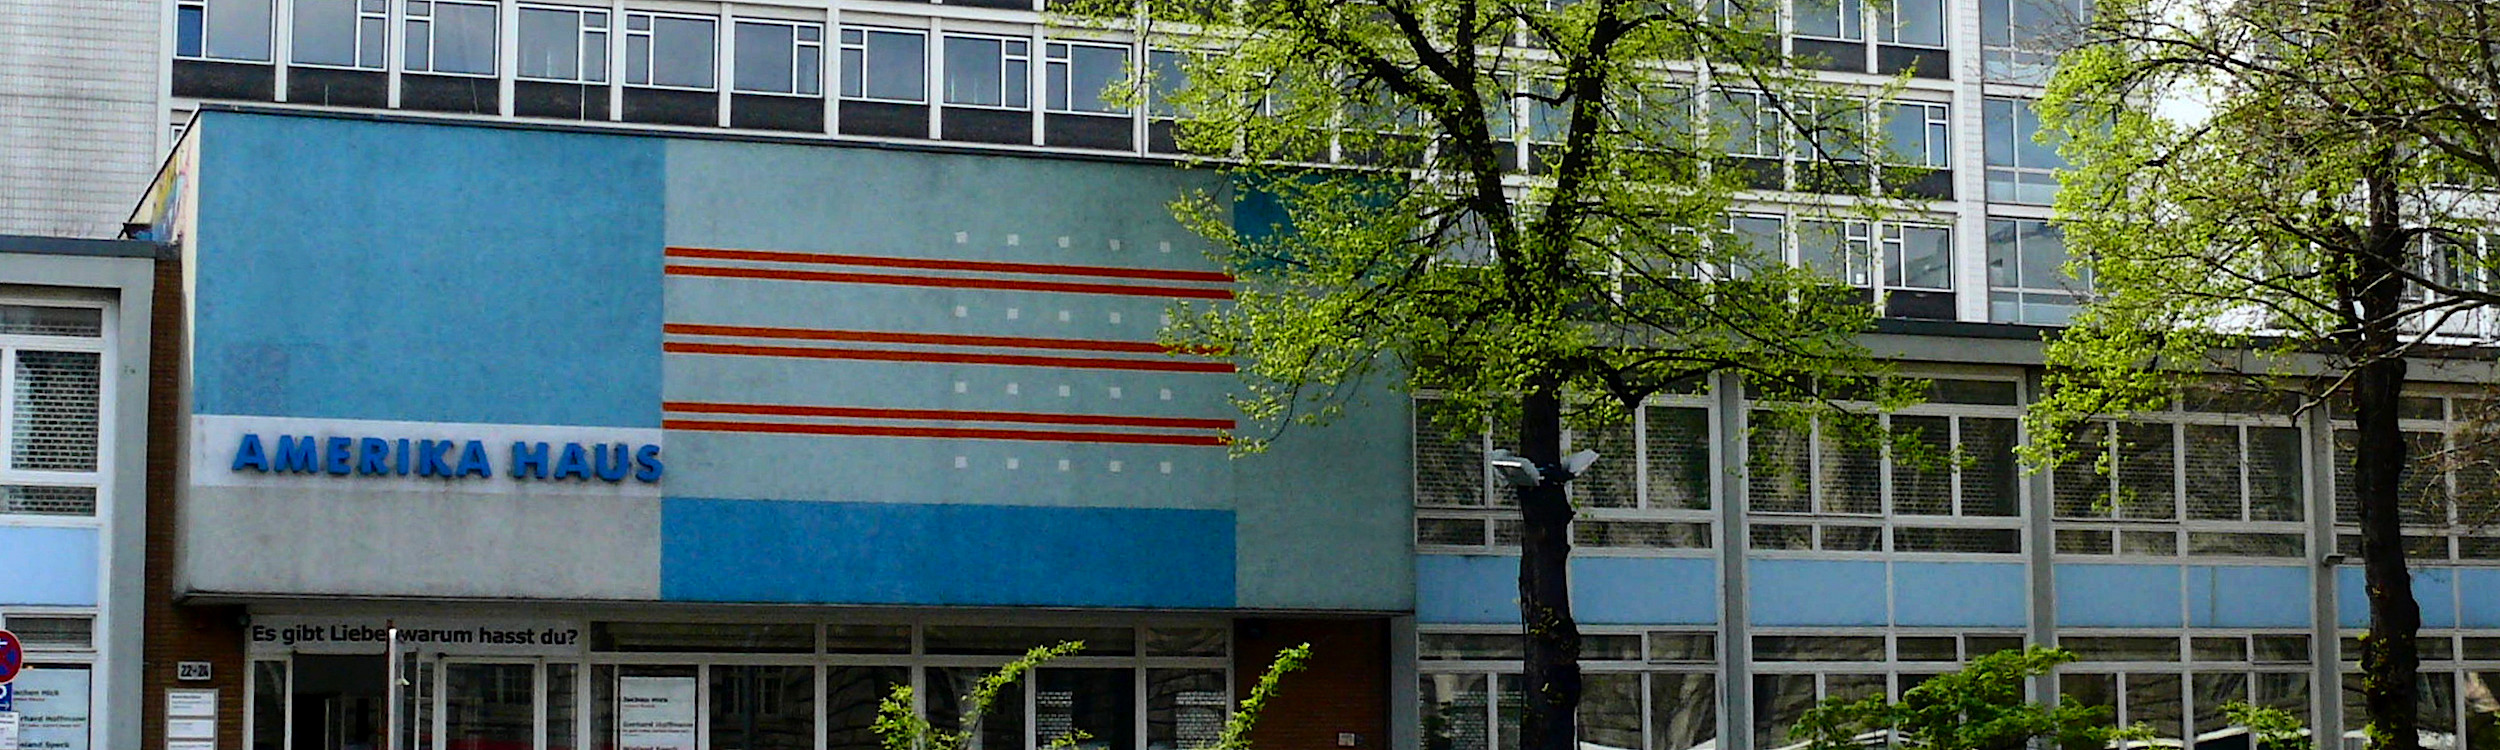 Berlin-Charlottenburg Amerikahaus in der Hardenbergstraße